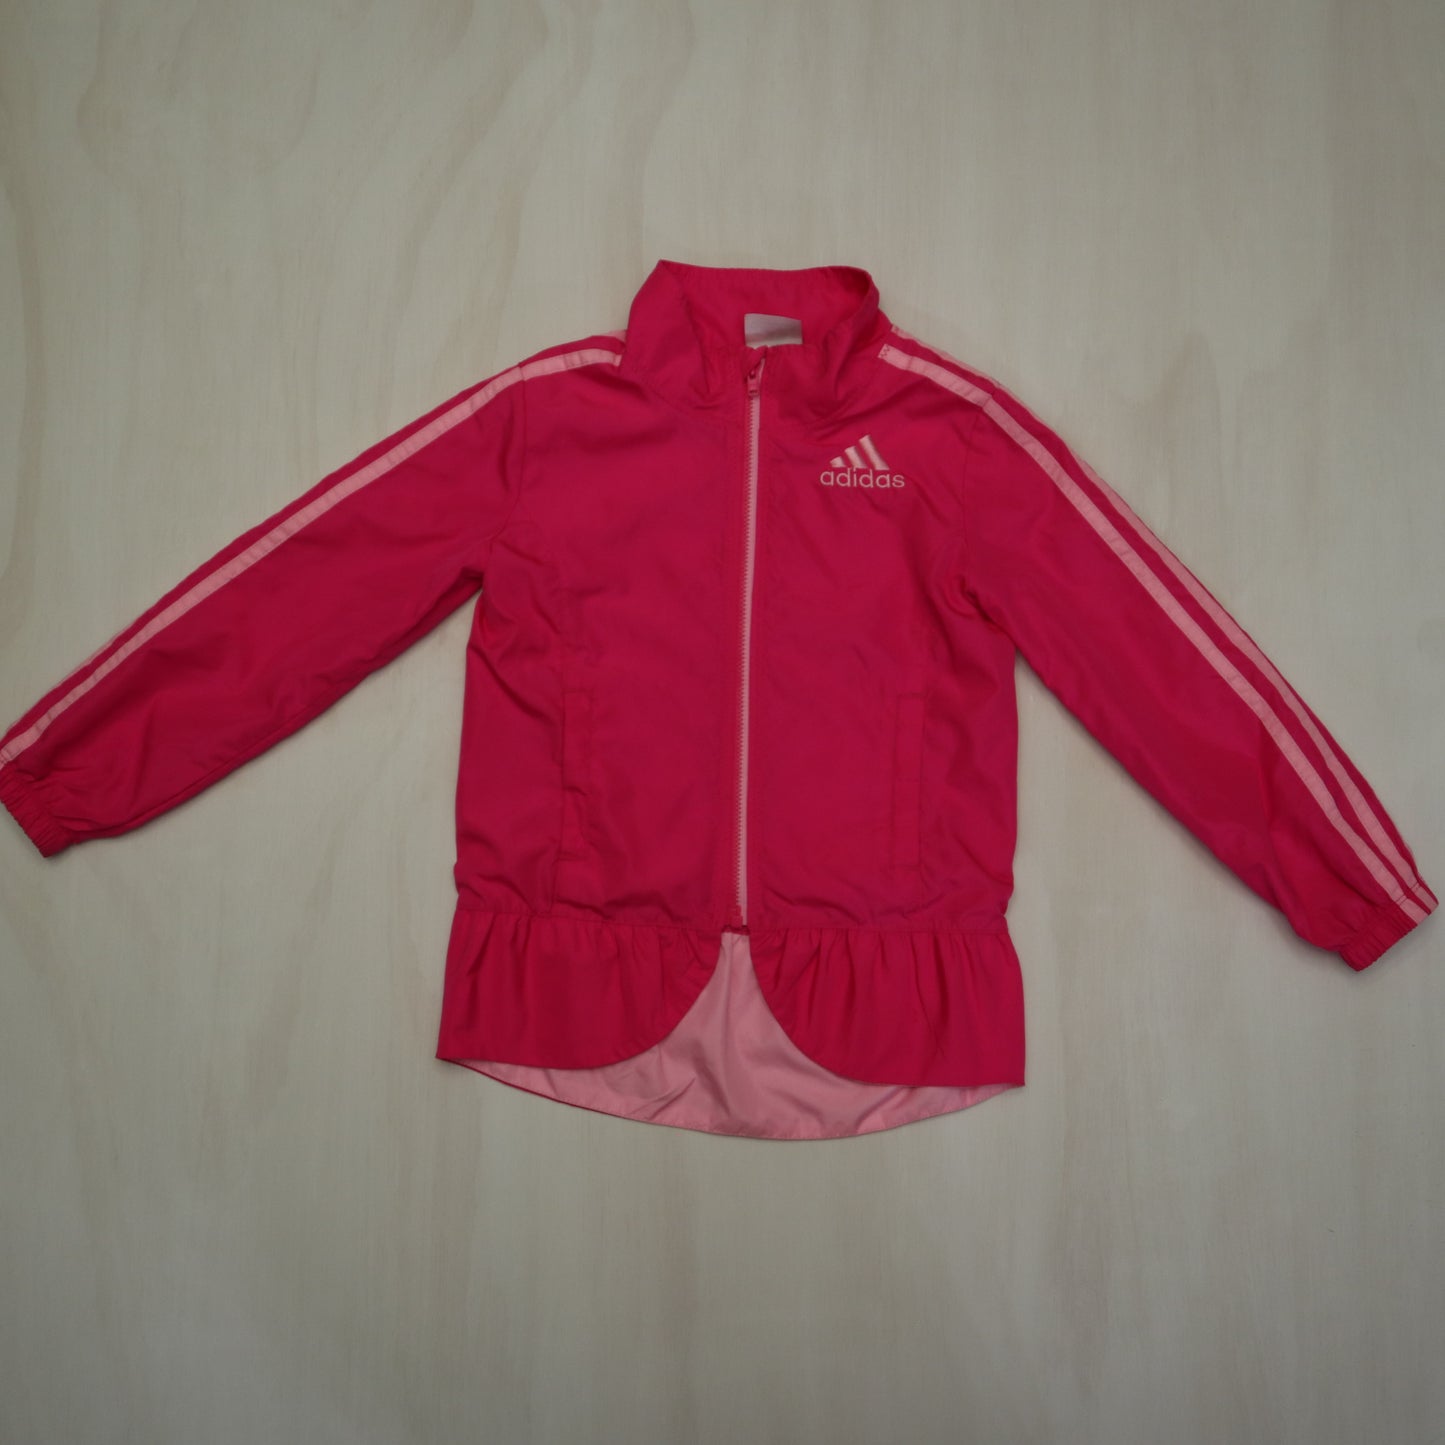 Adidas - Jacket (4T)